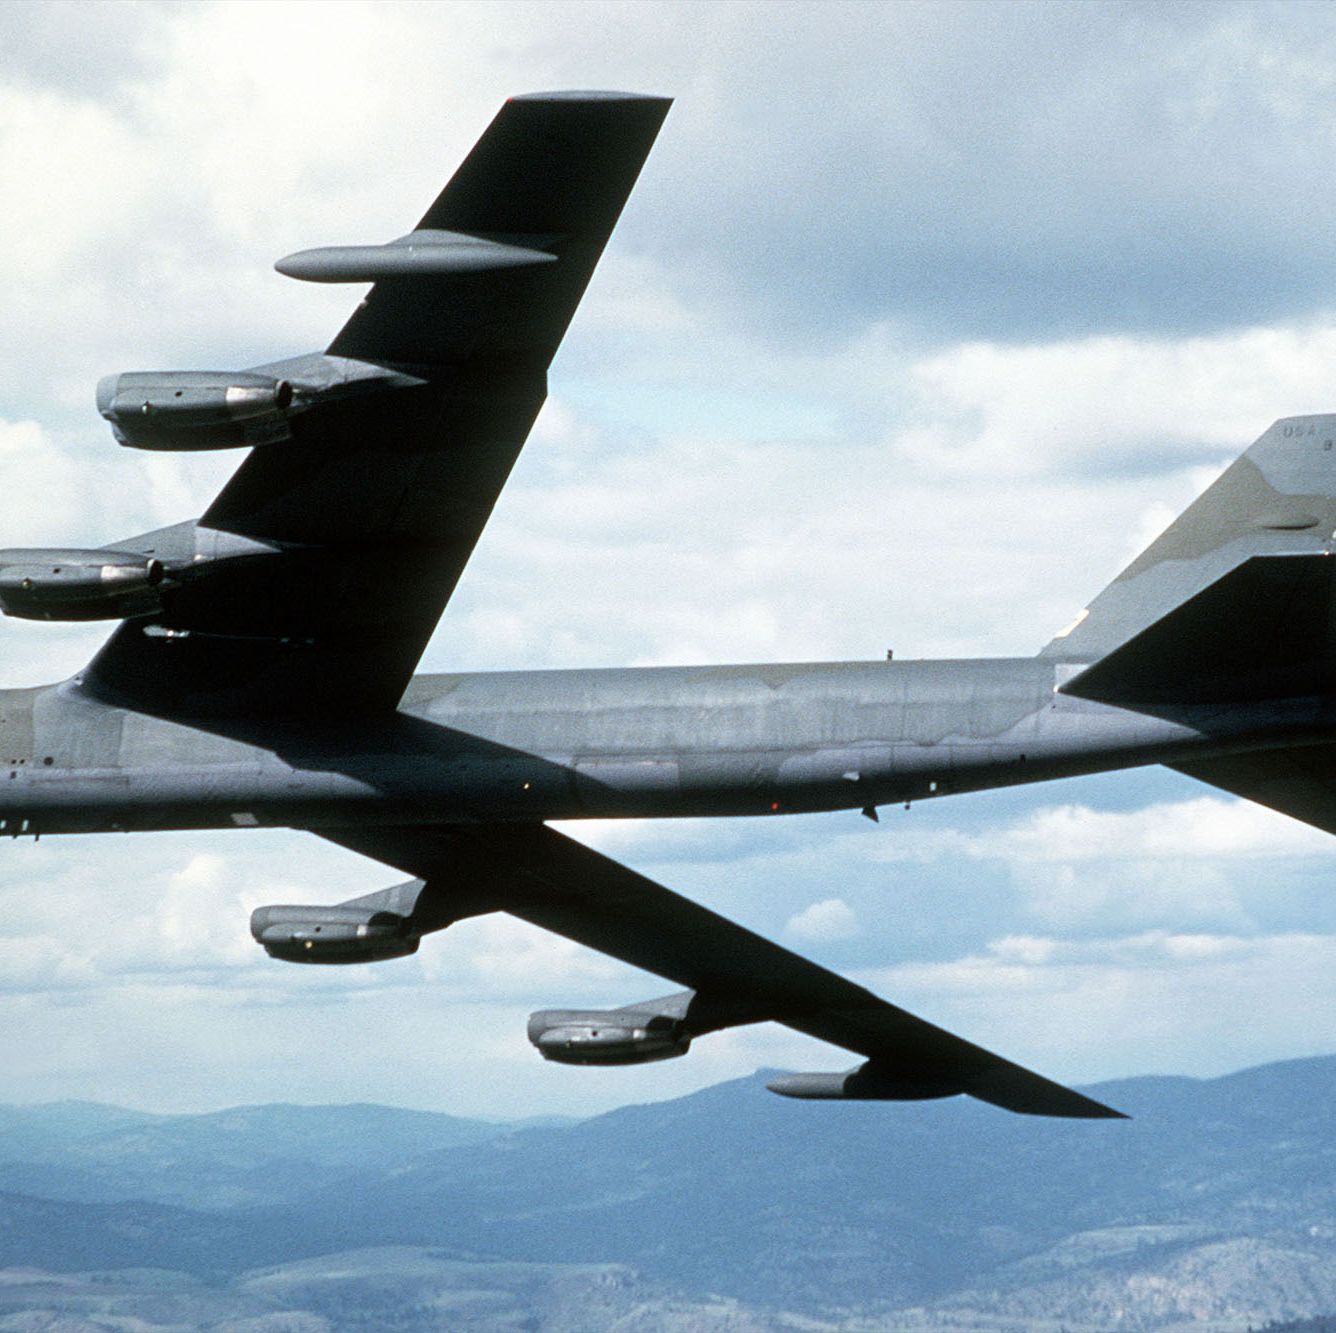 A B-52 Bomber Crash Nearly Nuked North Carolina in 1961